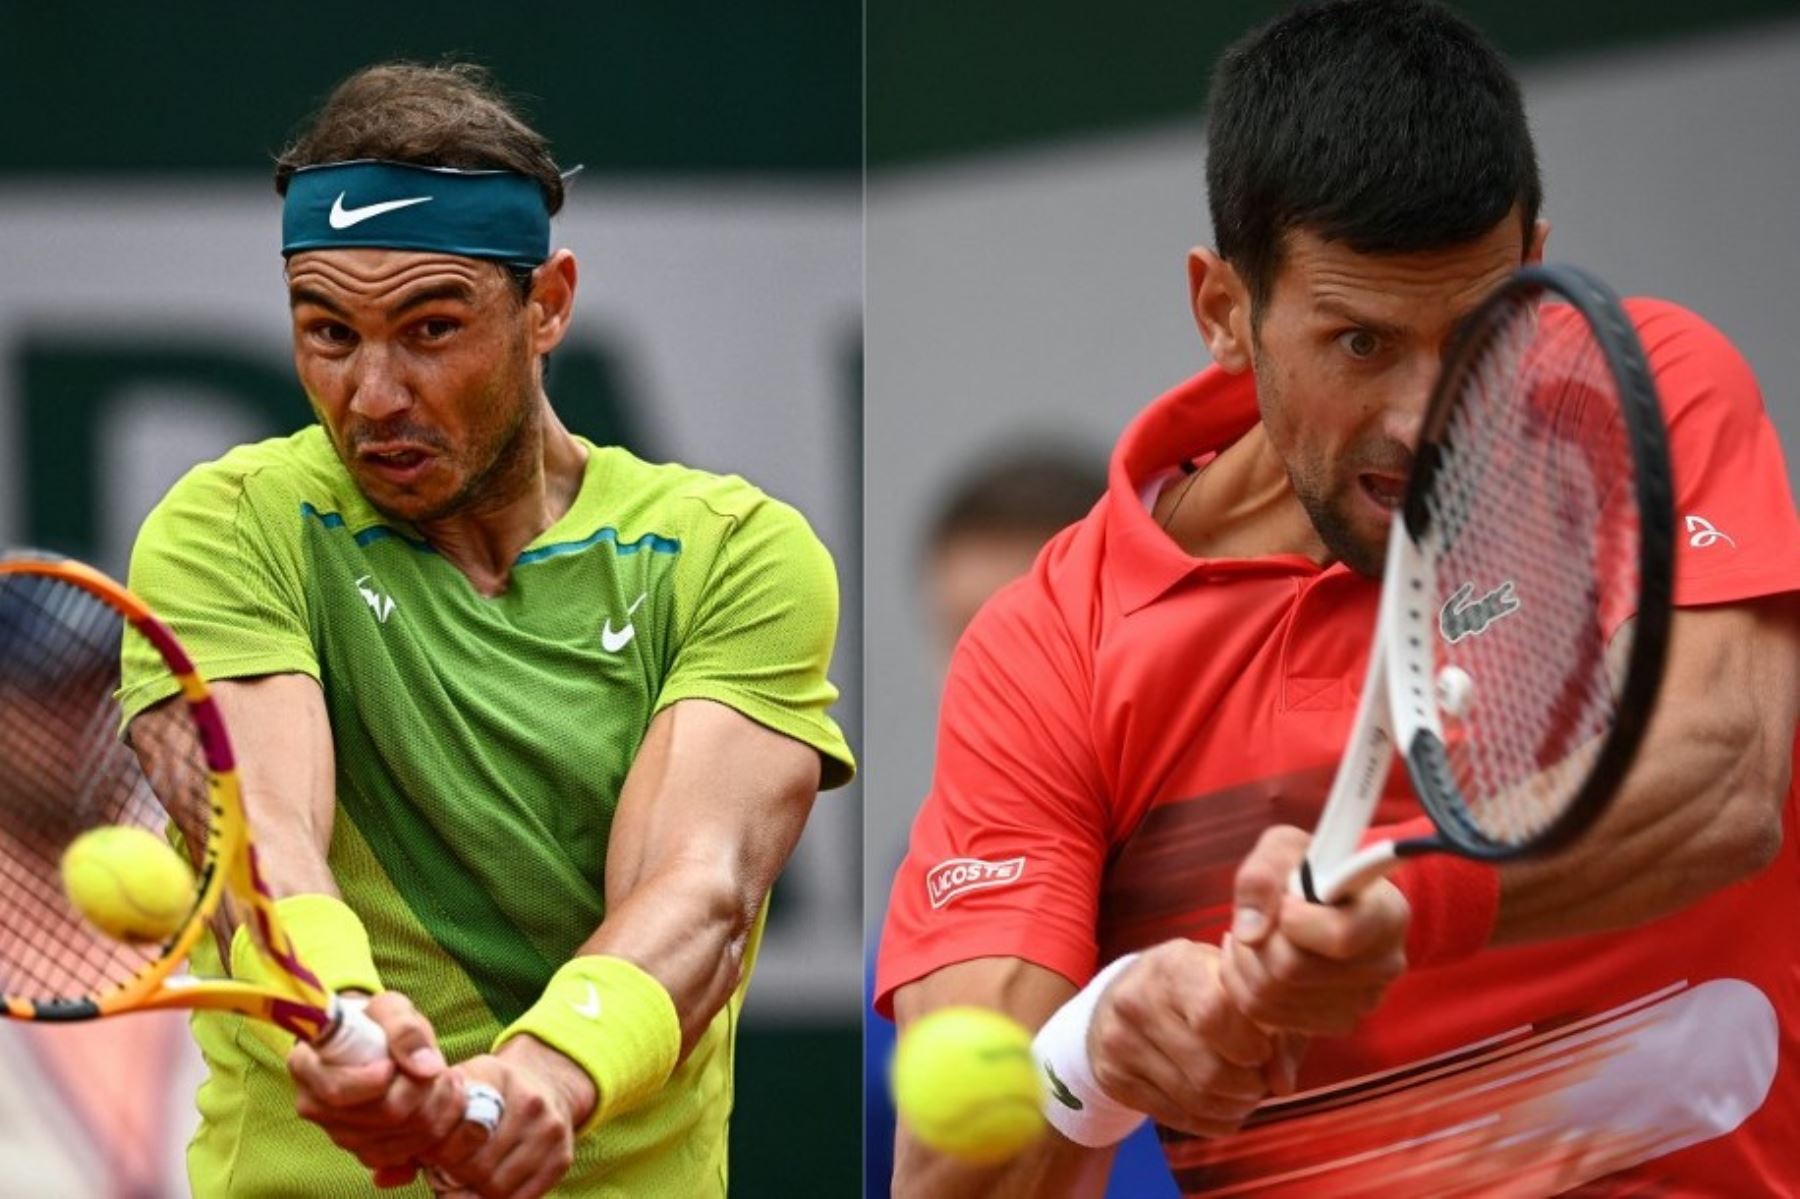 El encuentro entre Rafael Nadal ante Novak Djokovic será el más esperado por los aficionados del tenis mundial